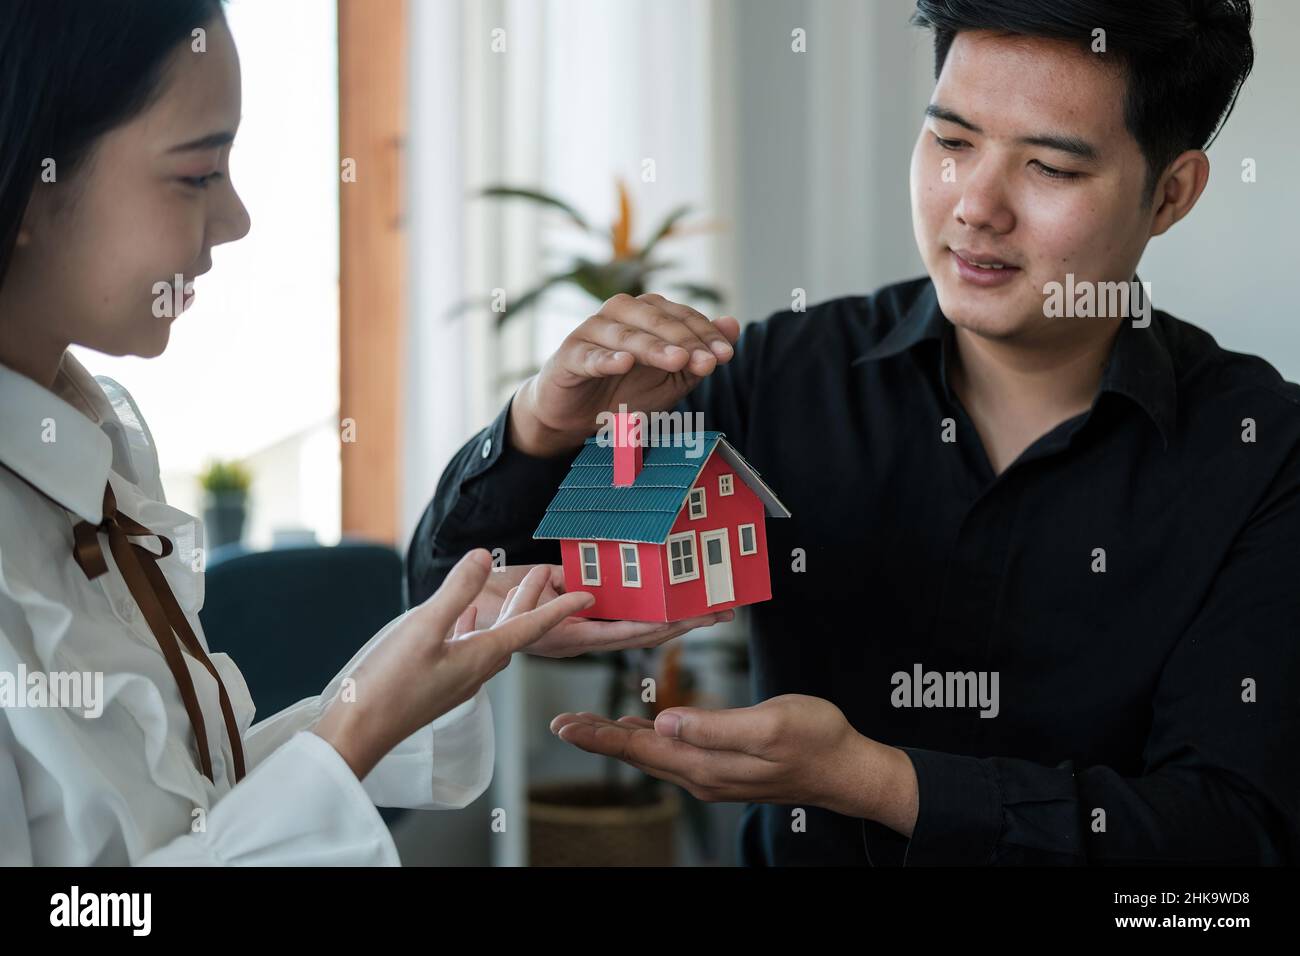 Le coppie asiatiche stanno usando le loro mani per proteggere il concetto dell'uso dei gesti negli investitori immobiliari, assicurazione di leasing, acquisto e vendite Foto Stock